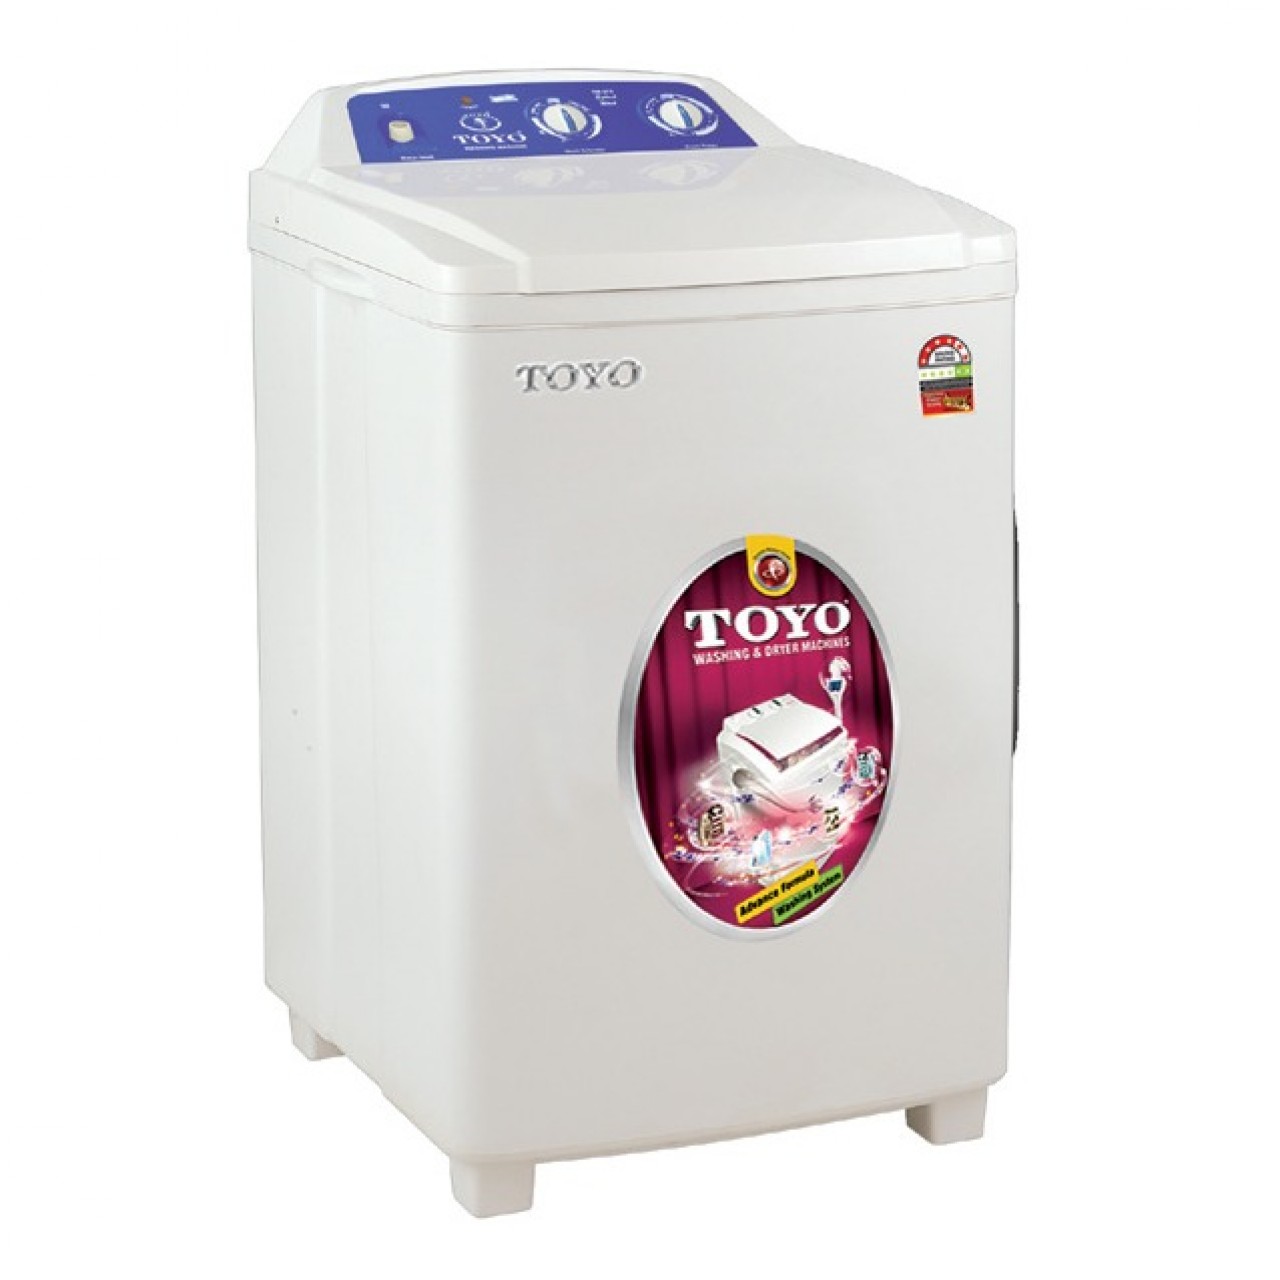 Toyo Single Tub Washing Machine TW-675 - Capacity 13Kg